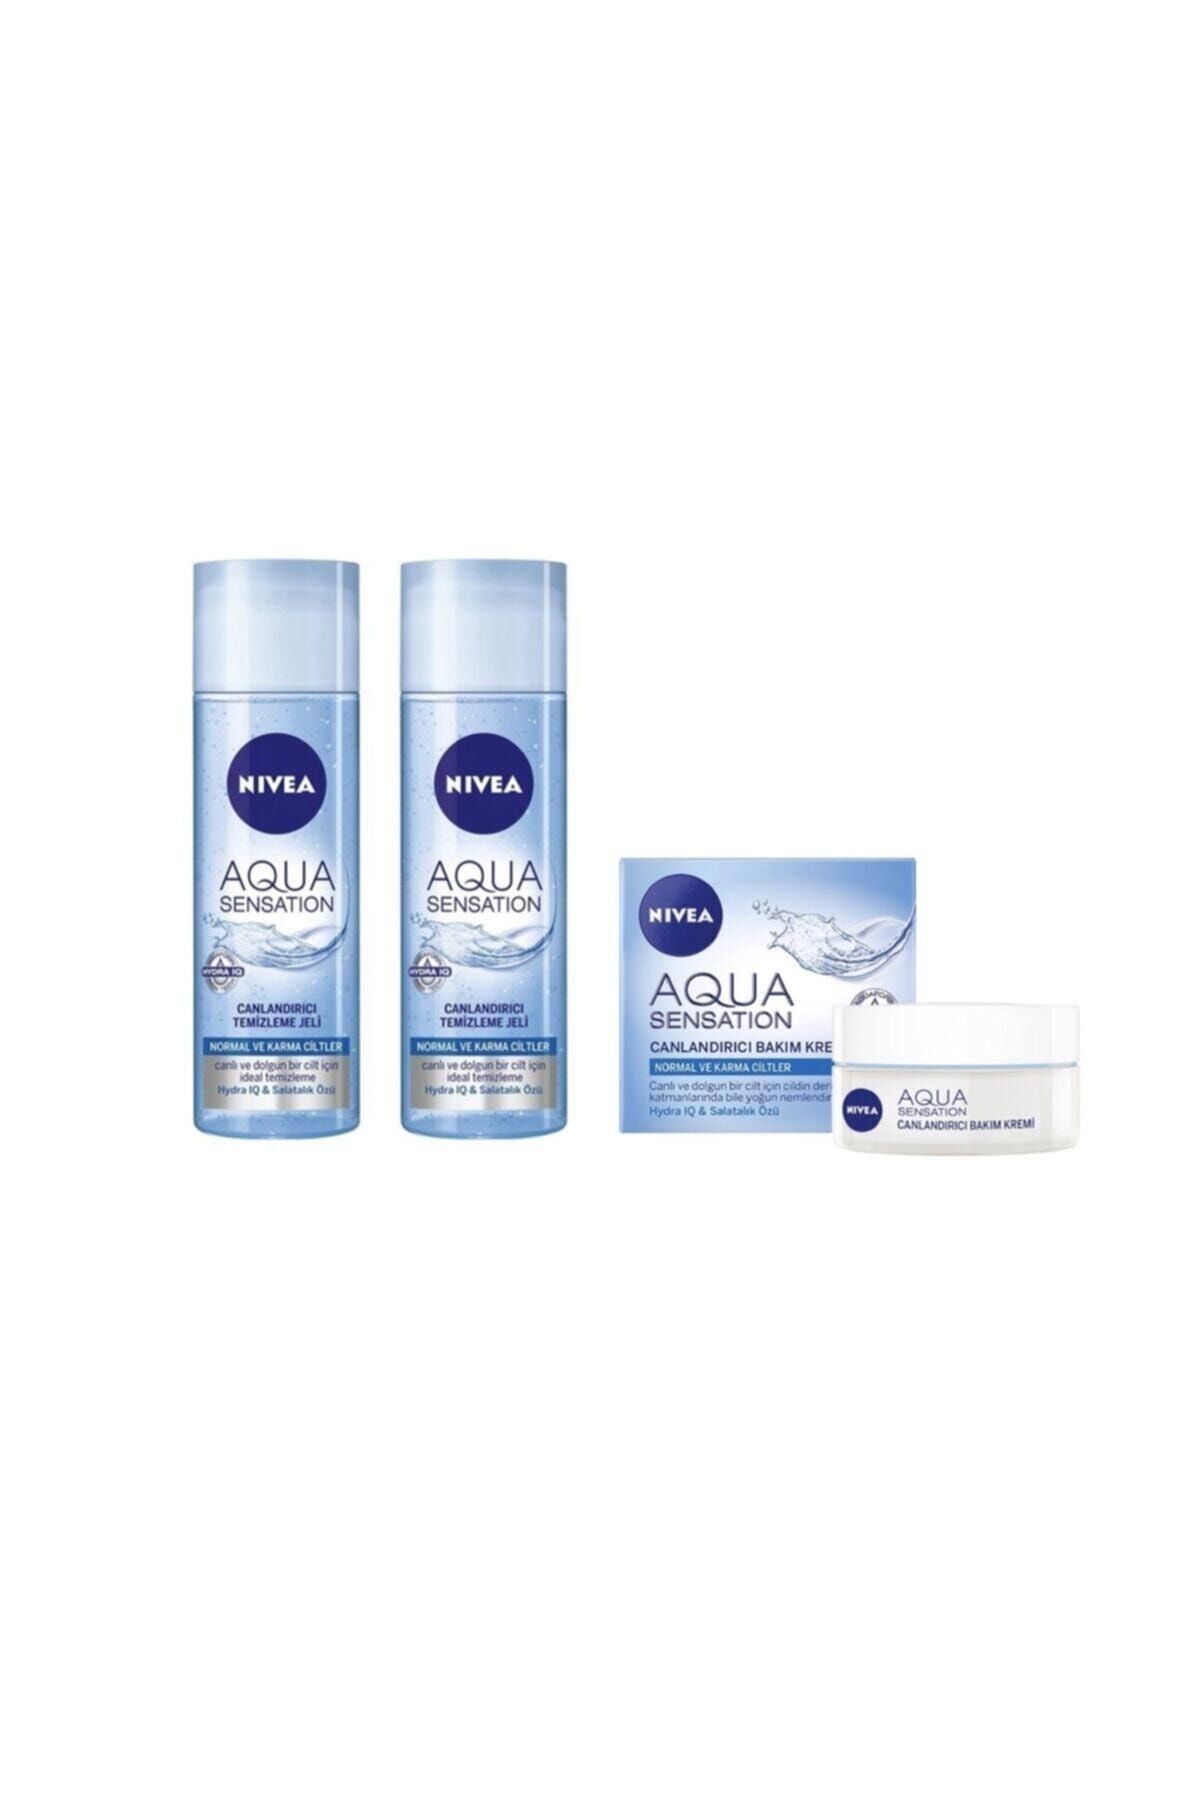 NIVEA Aqua Sensation Canlandırıcı Temizleme Jeli 200 ml 2 Adet Aqua Sensation Canlandırıcı Krem 50 ml